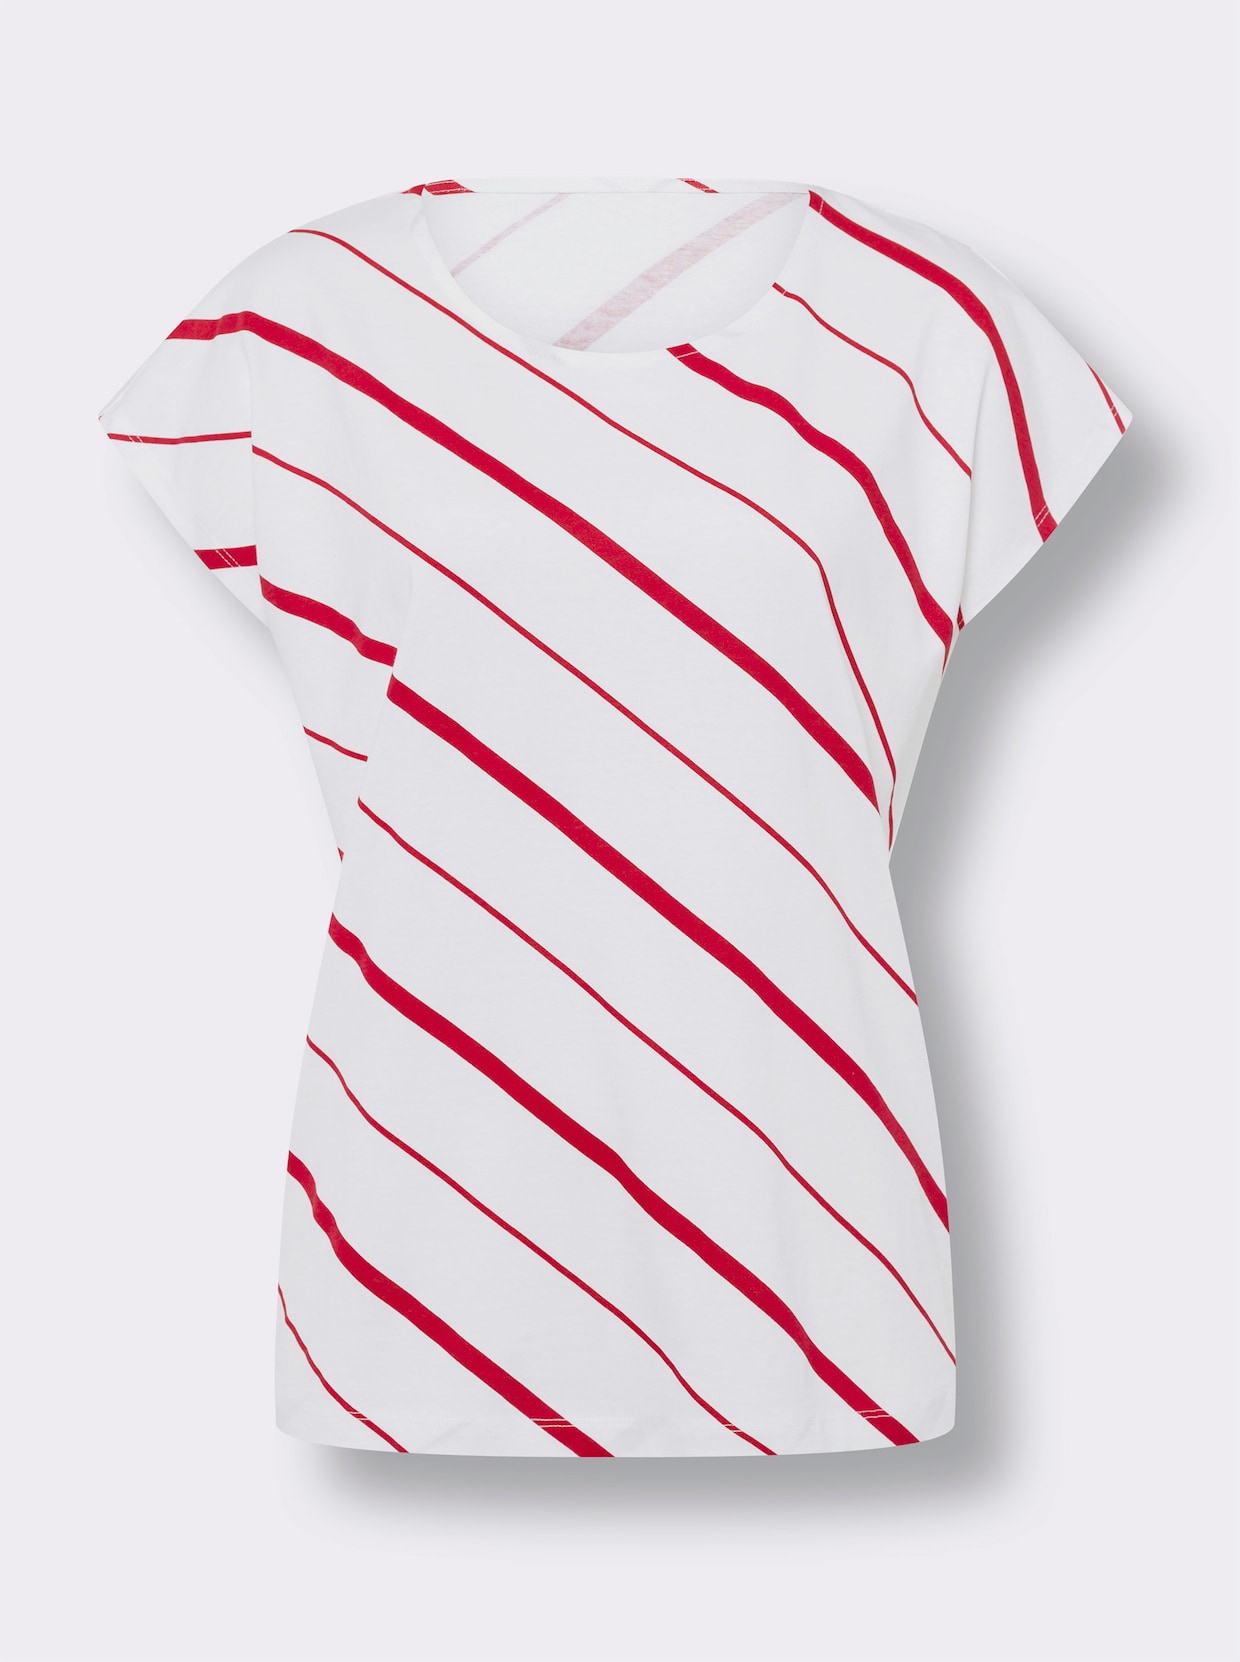 Tričko s krátkým rukávem - bílá-červená-proužek